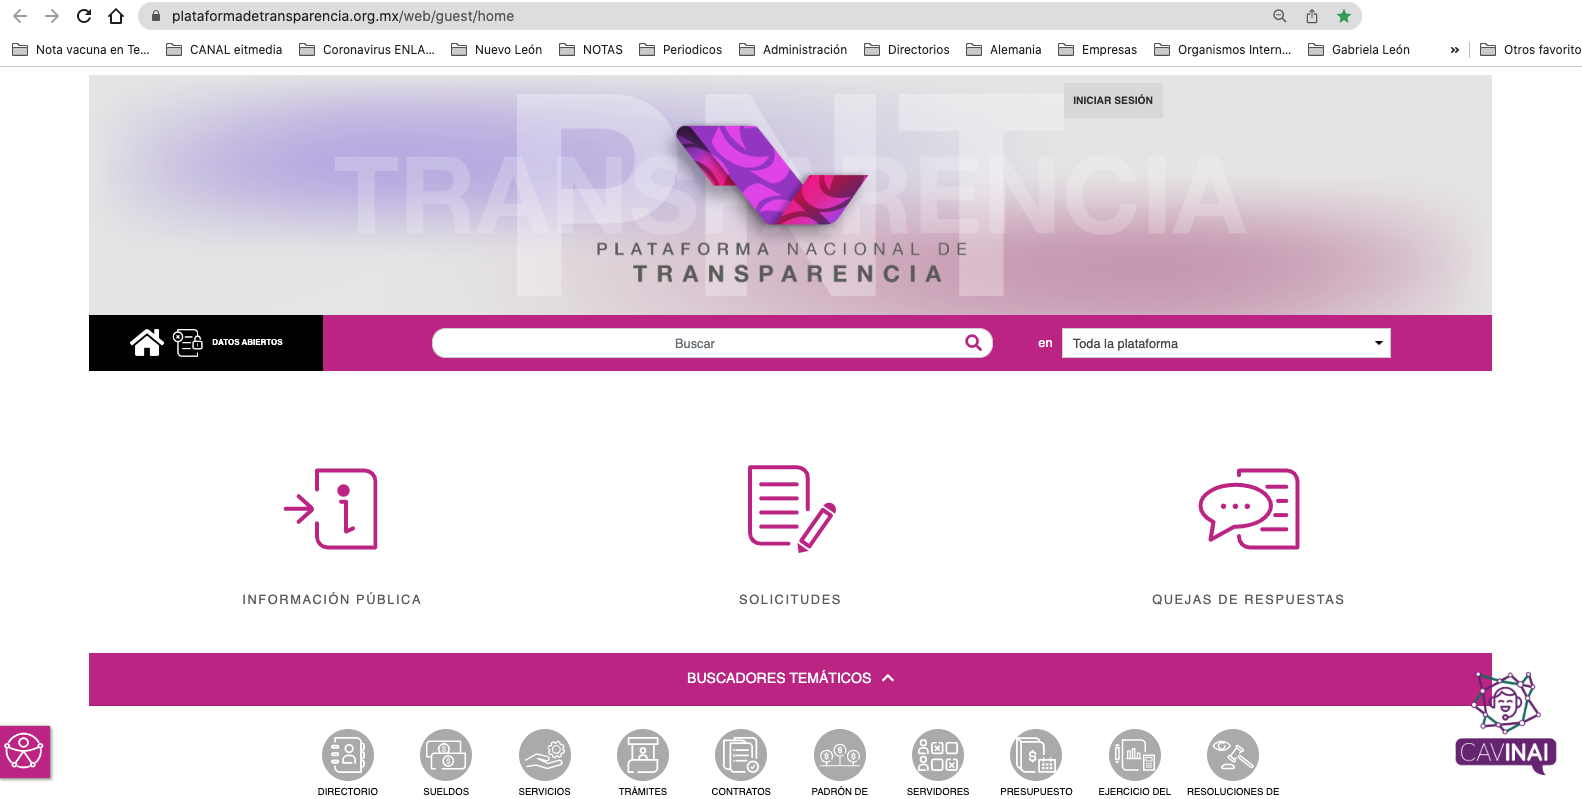 La Plataforma Nacional de Transparencia (PNT) es una de las vías por las que los ciudadanos pueden solicitar información pública a los sujetos obligados.Crédito.- Toma de pantalla del portal de la Plataforma Nacional de Transparencia 